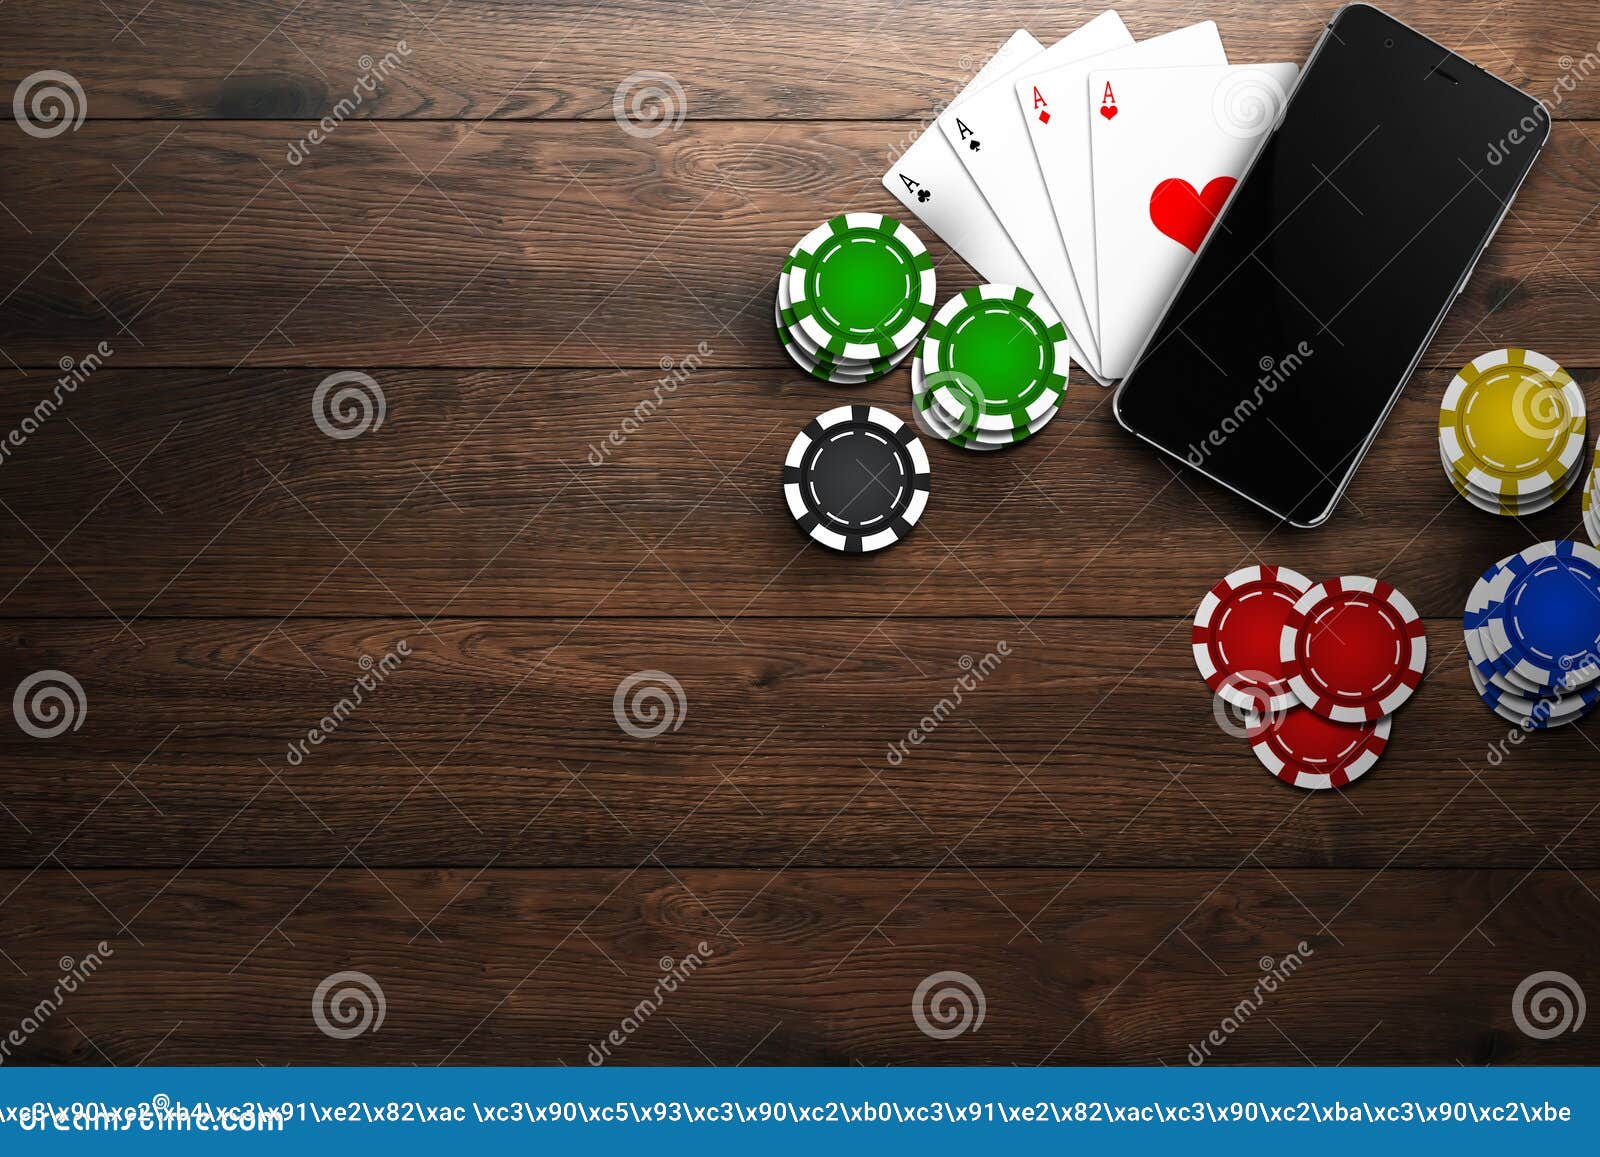 Казино интернет для телефонов что такое ттр казино